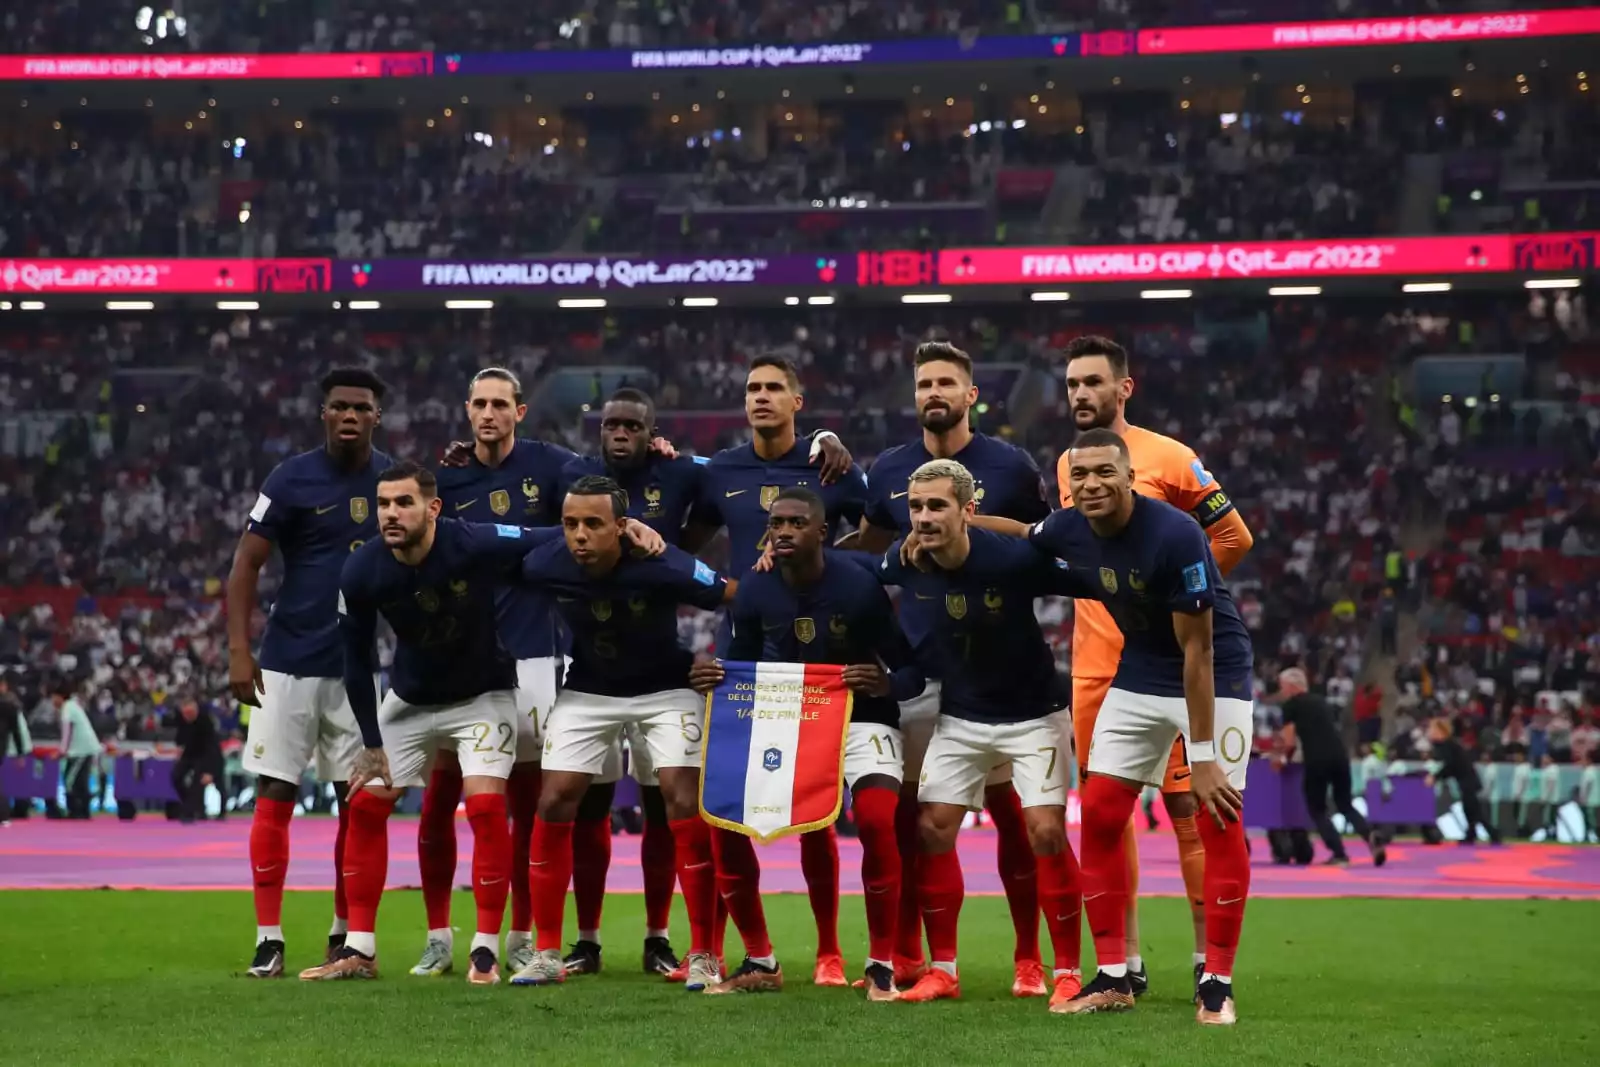 England vs France, FIFA: रोमांचक मैच में फ्रांस ने इंग्लैंड को दी 2-1 से मात,  ओलिवर जीरूड ने दागा डिसाइडर